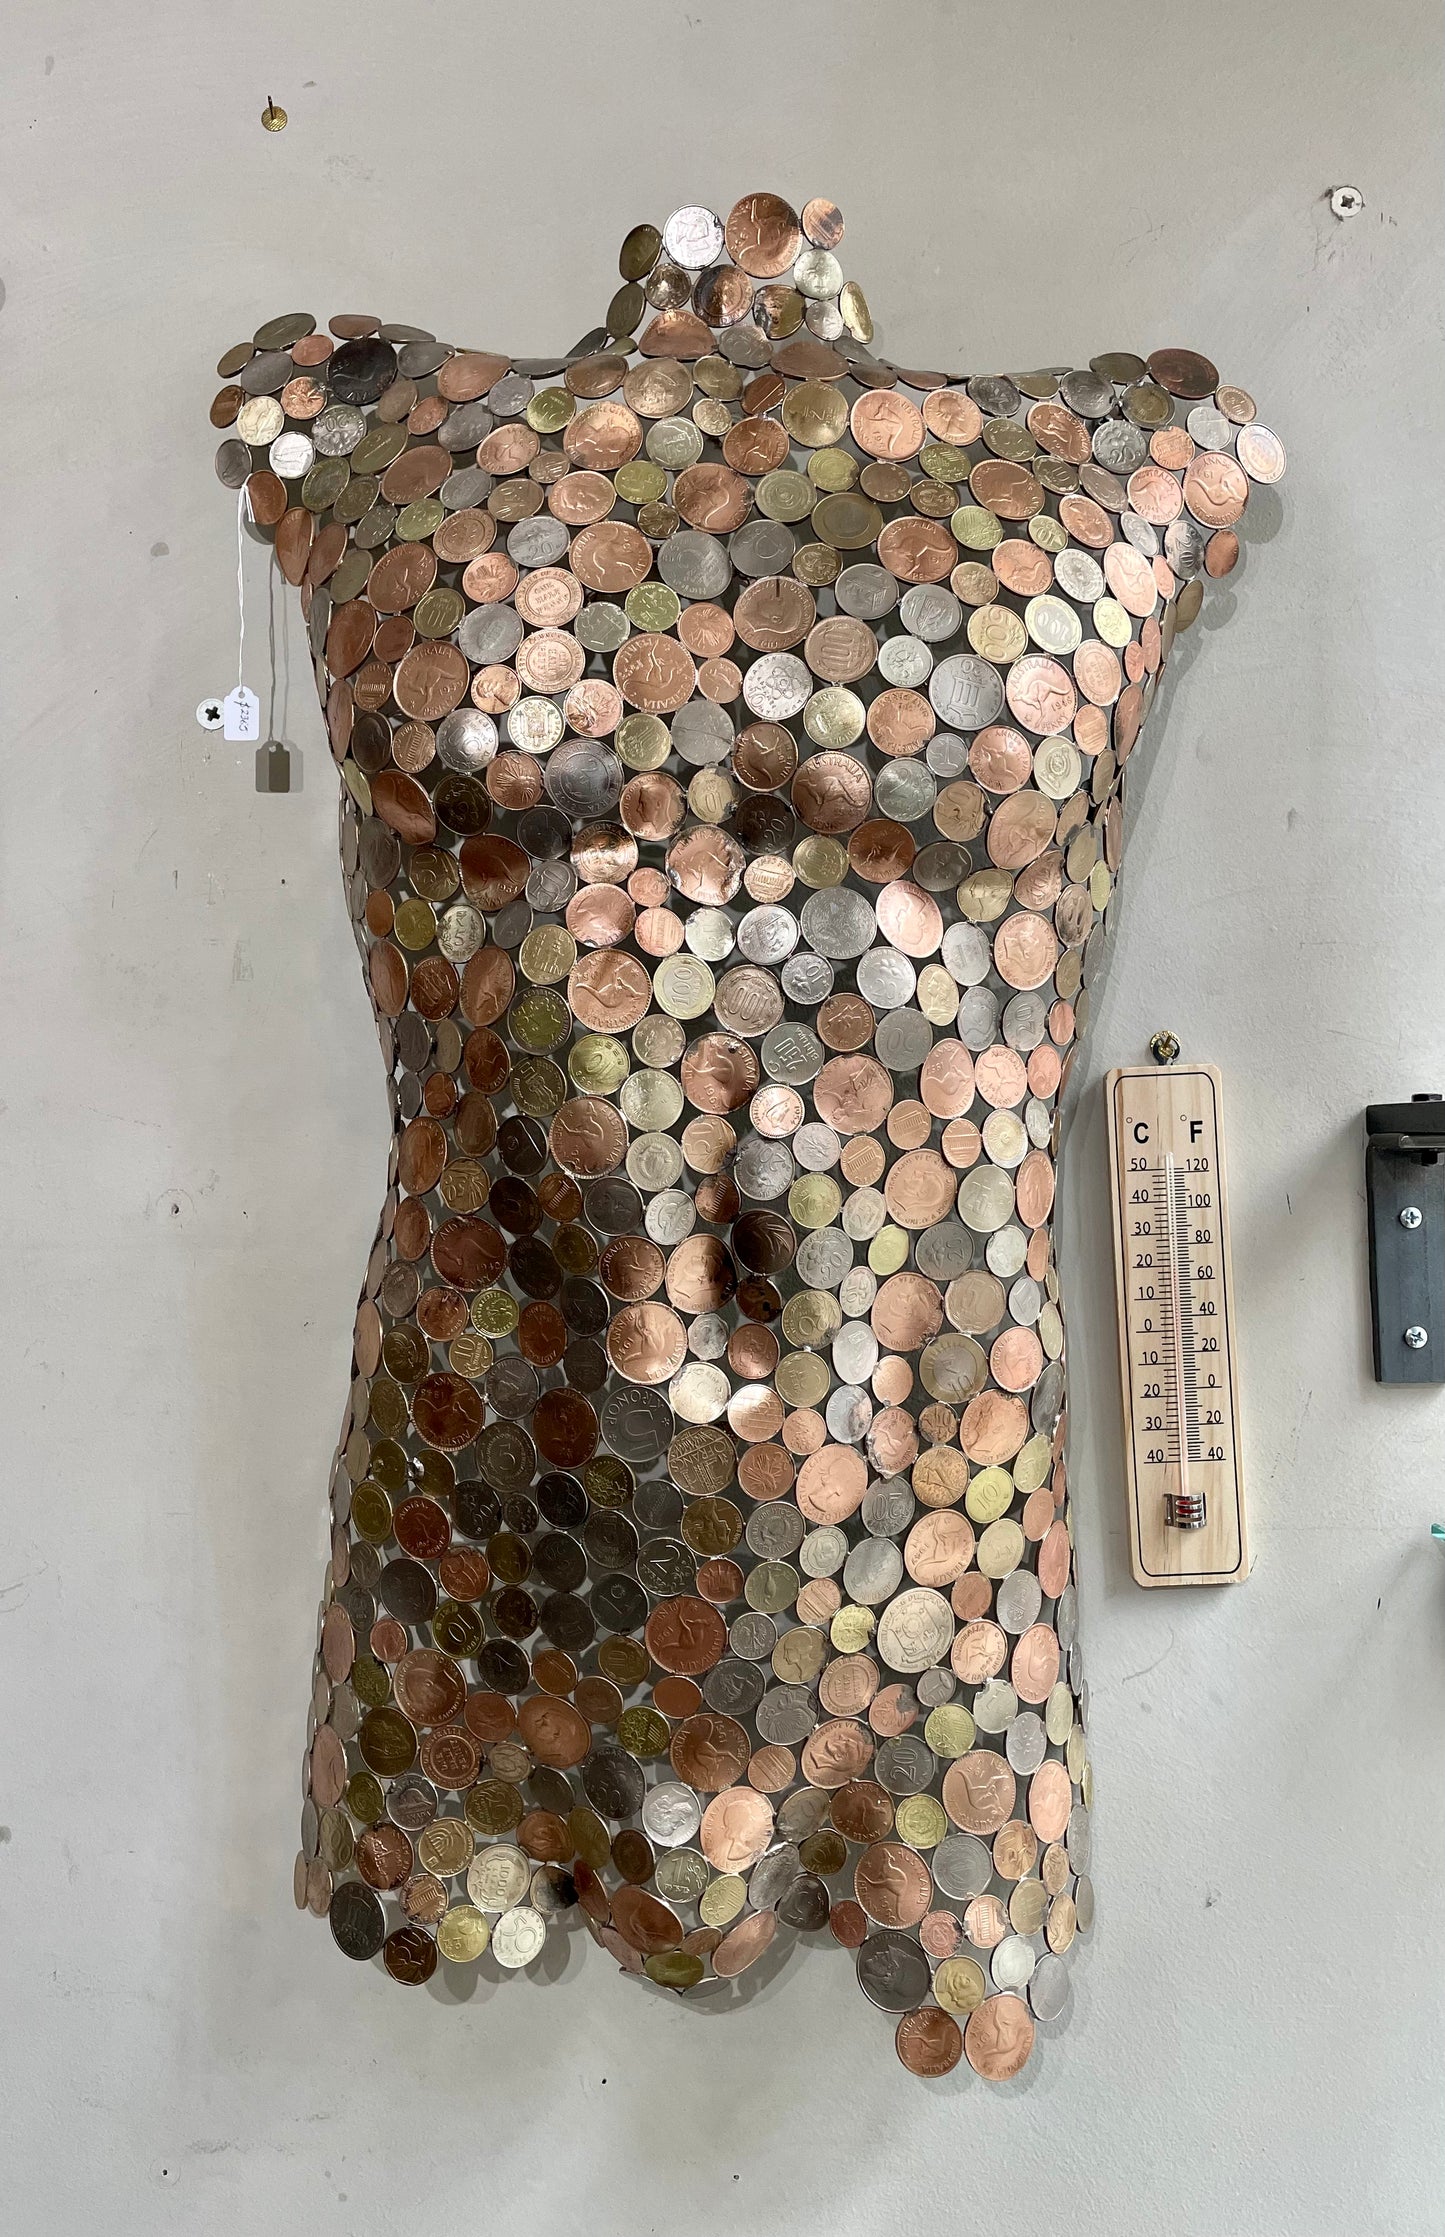 Torsos made of coins